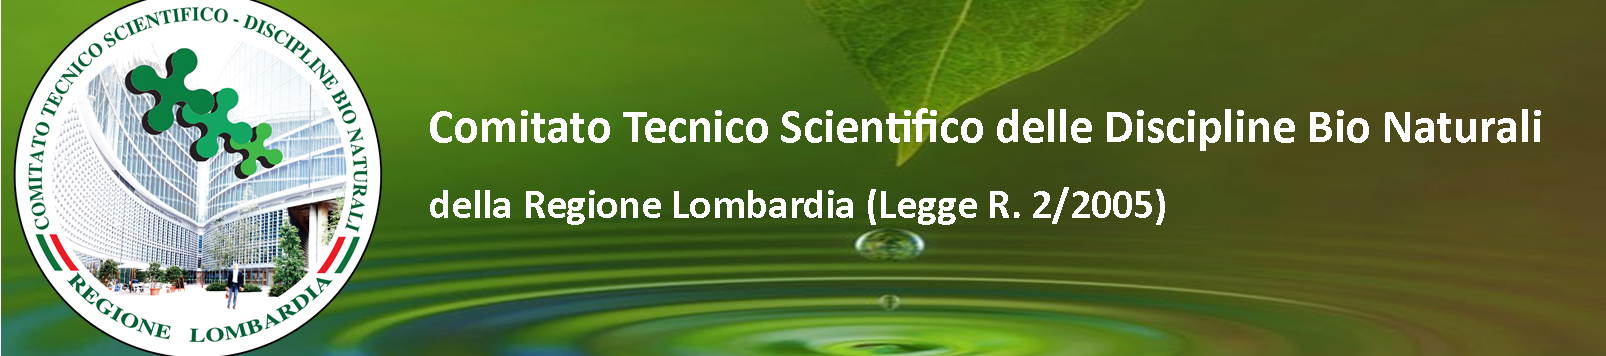 Comitato Tecnico Scientifico Discipline Bio Naturali  della Regione Lombardia